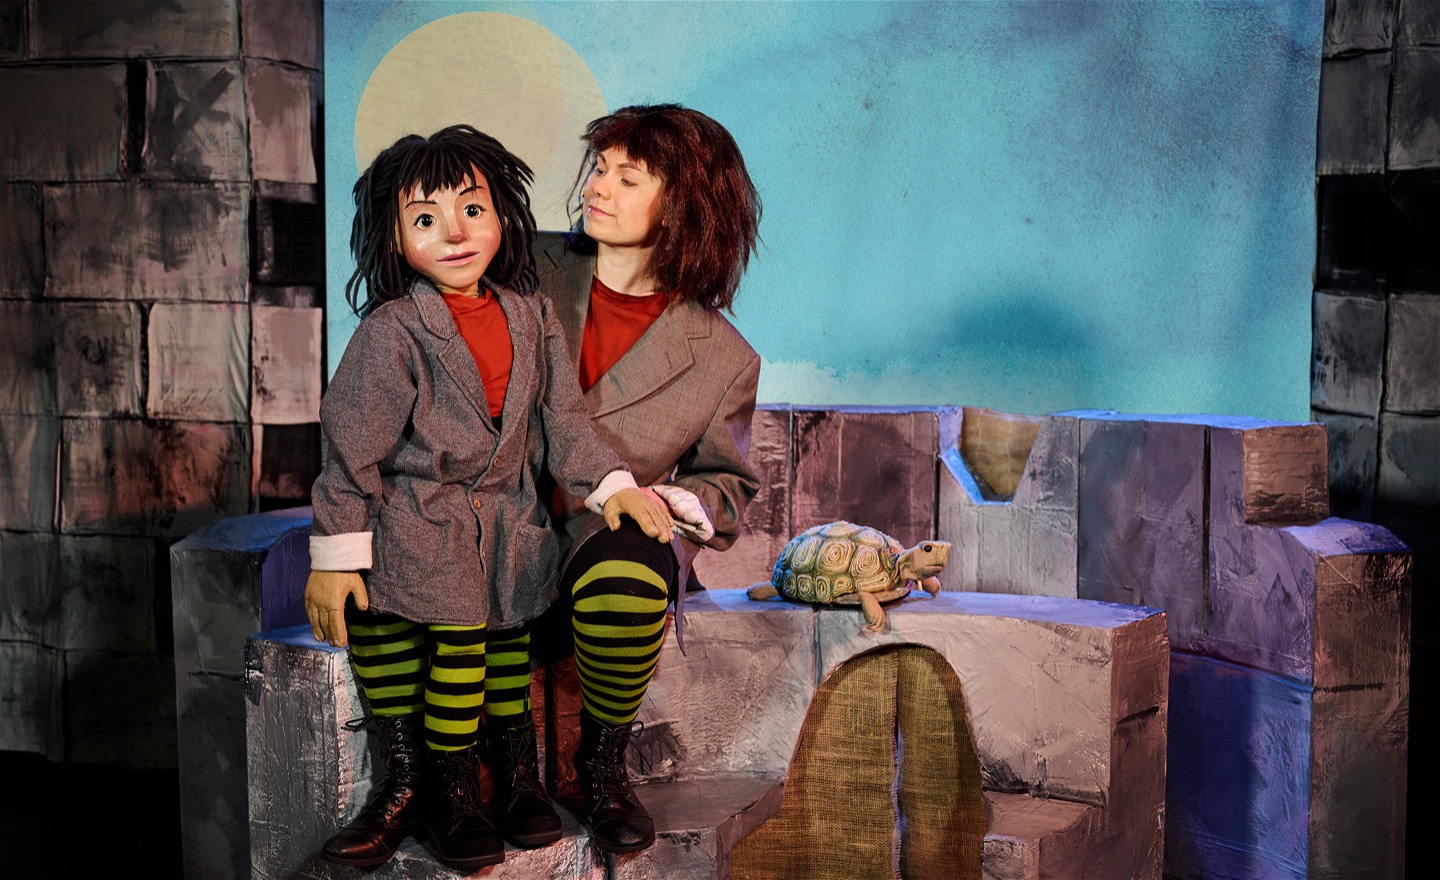 Föreställningsfoto från MOMO, föreställande Momo både som docka och som gestaltad av skådespelare Anna-Riina Virtanen